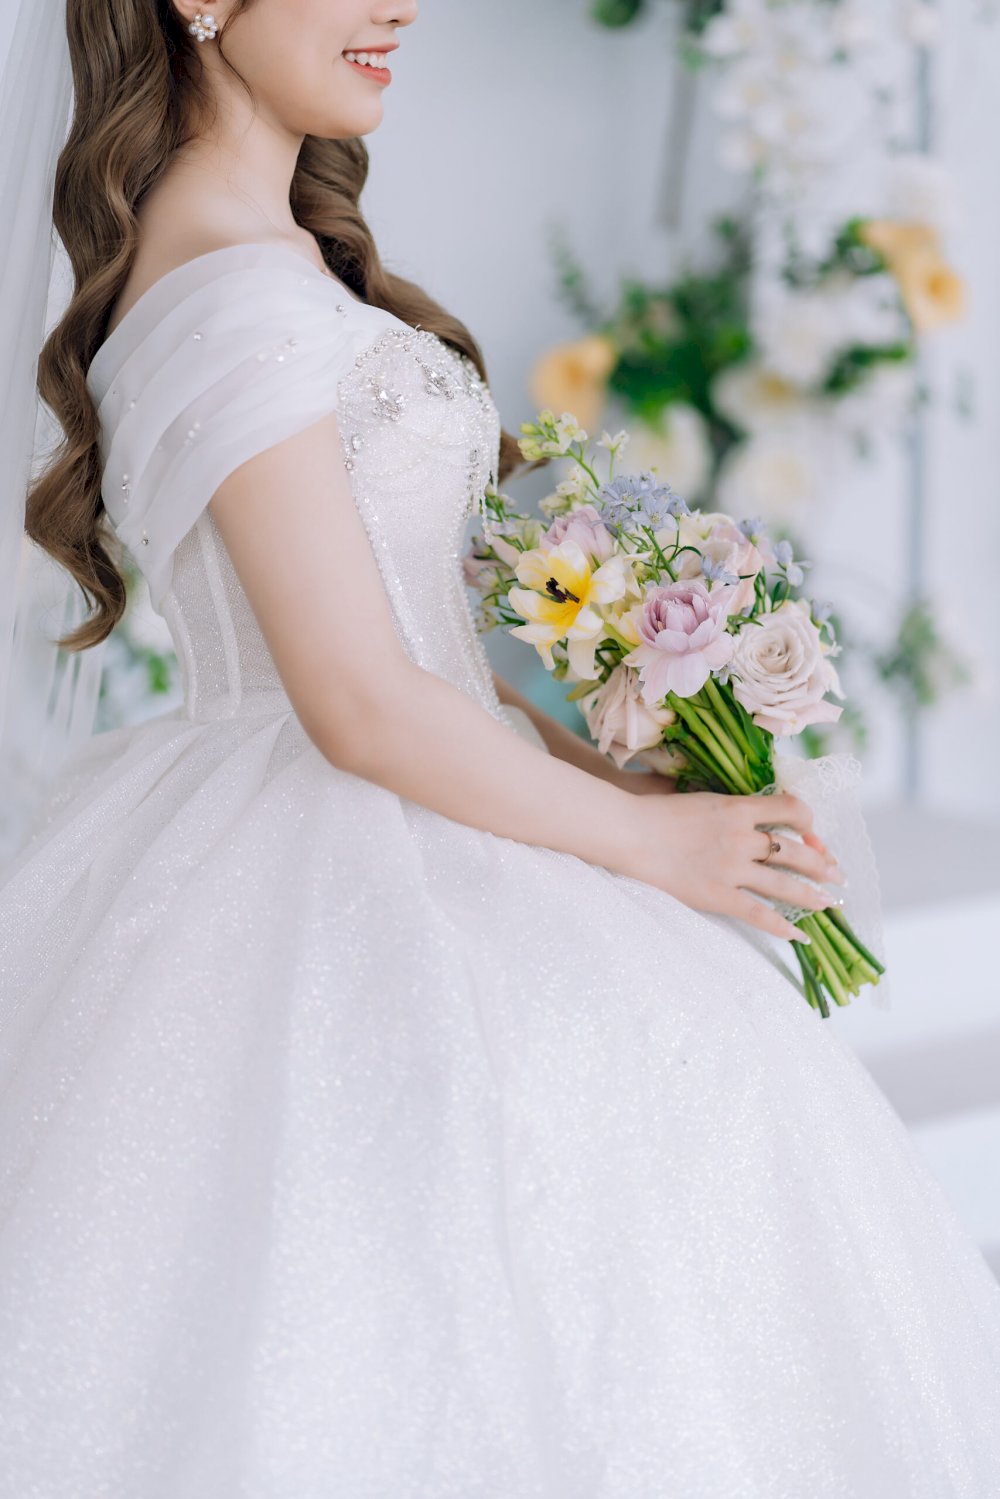 Váy cưới trễ vai là một thiết kế vừa kín đáo vừa hở nhẹ nhàng, có thể che đi phần khuyết điểm trên cơ thể mình